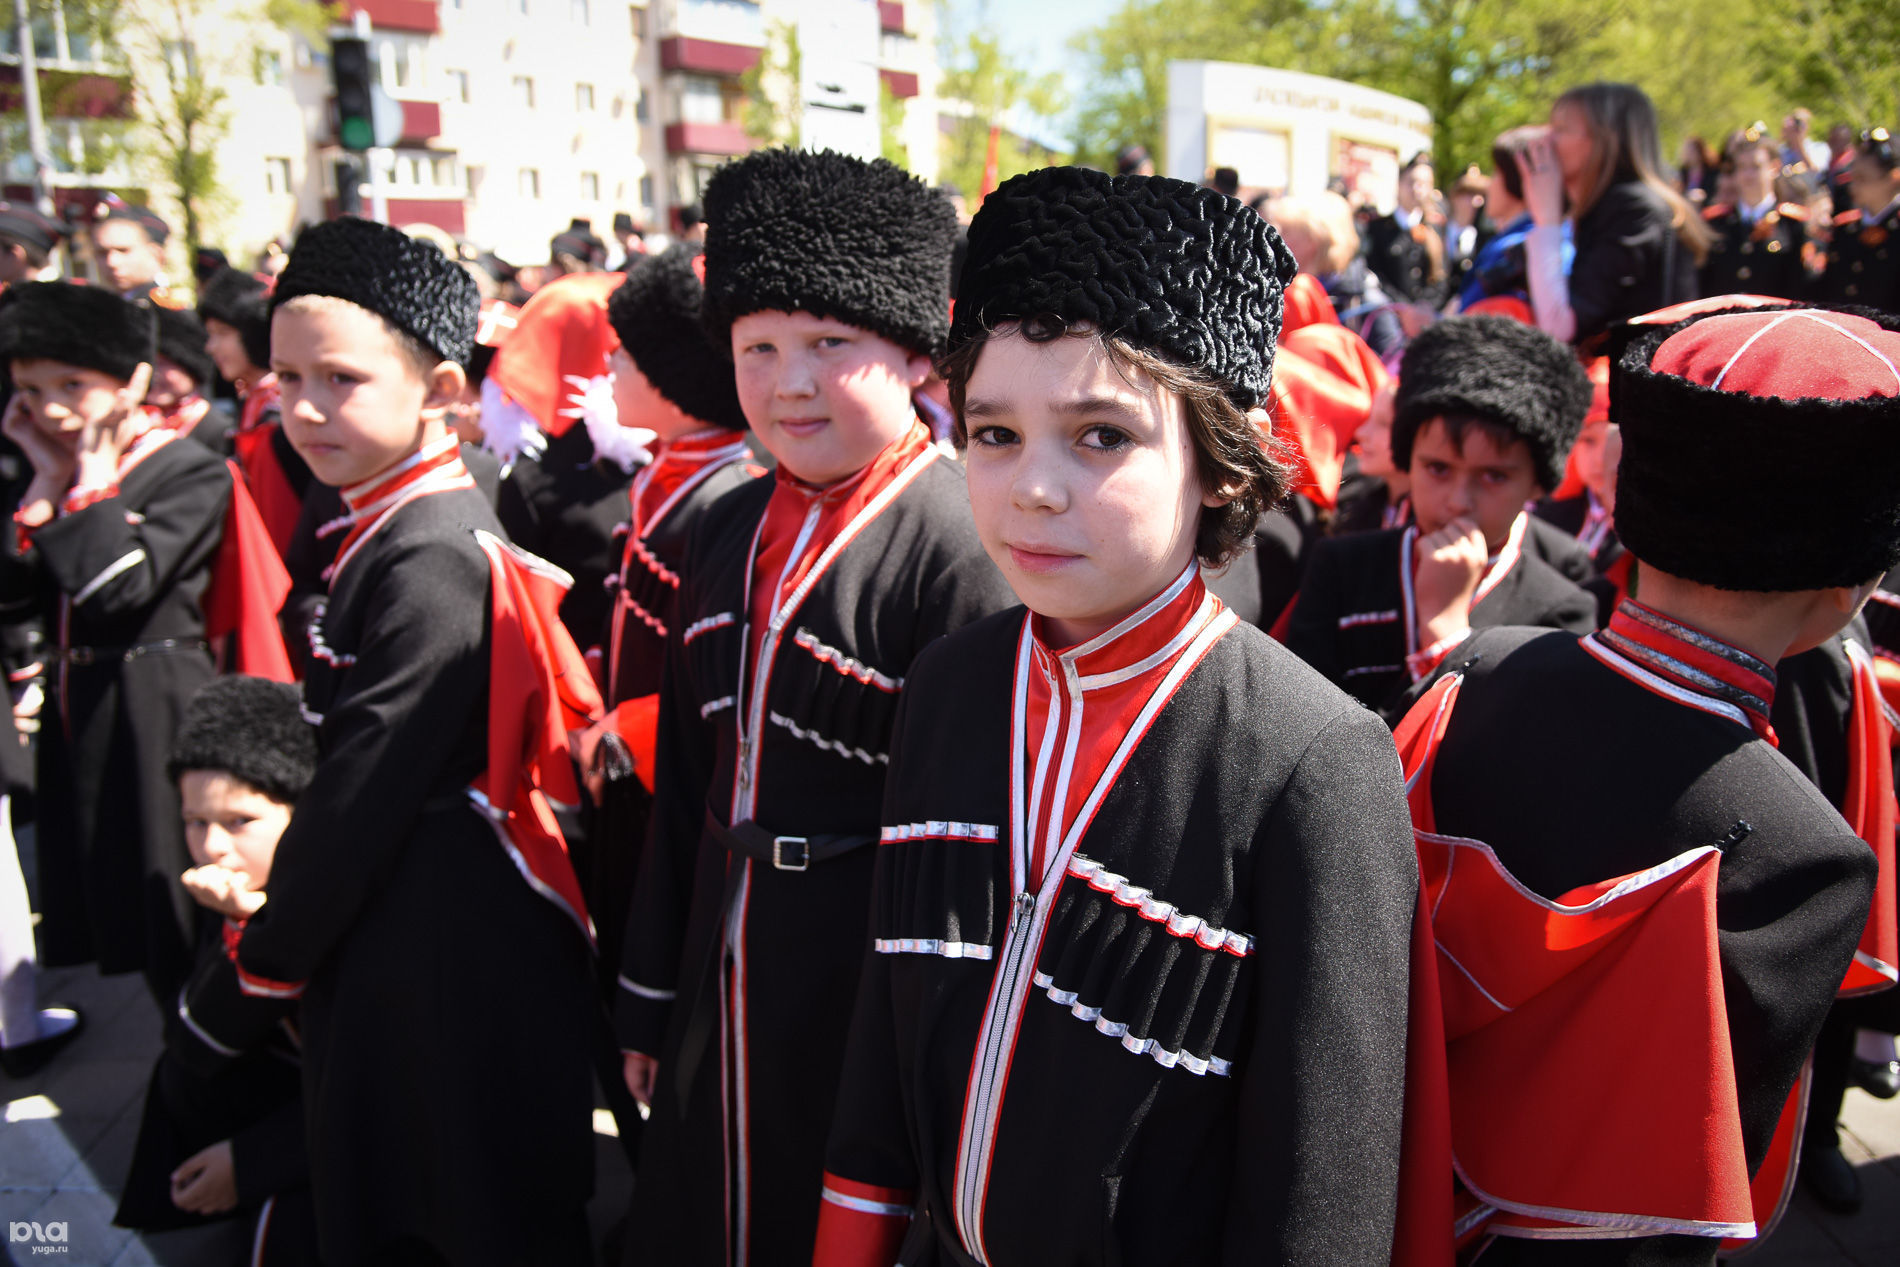 Парад казаков в Краснодаре © Фото Елены Синеок, Юга.ру